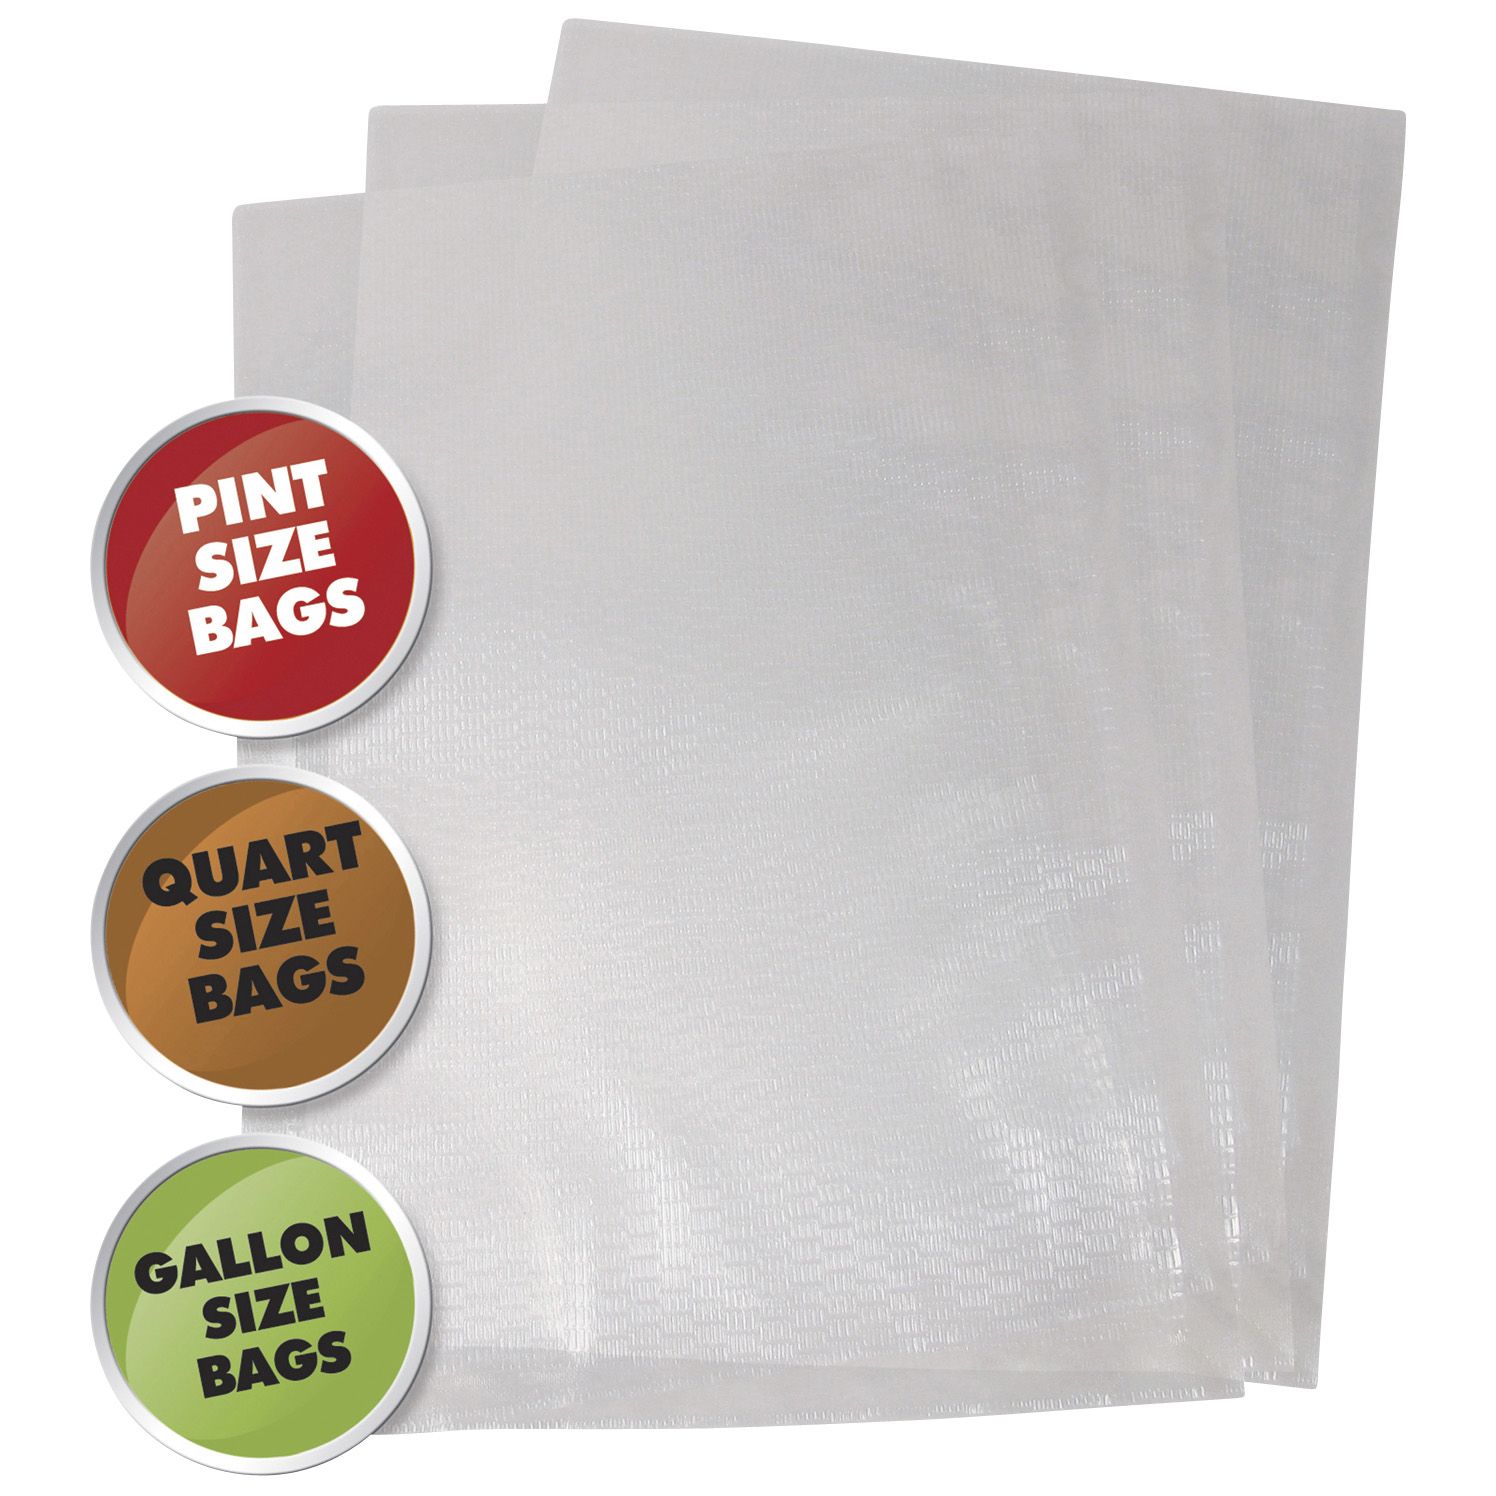 Fingerhut - Weston Vacuum Sealer Bags Assortment (50 Count)